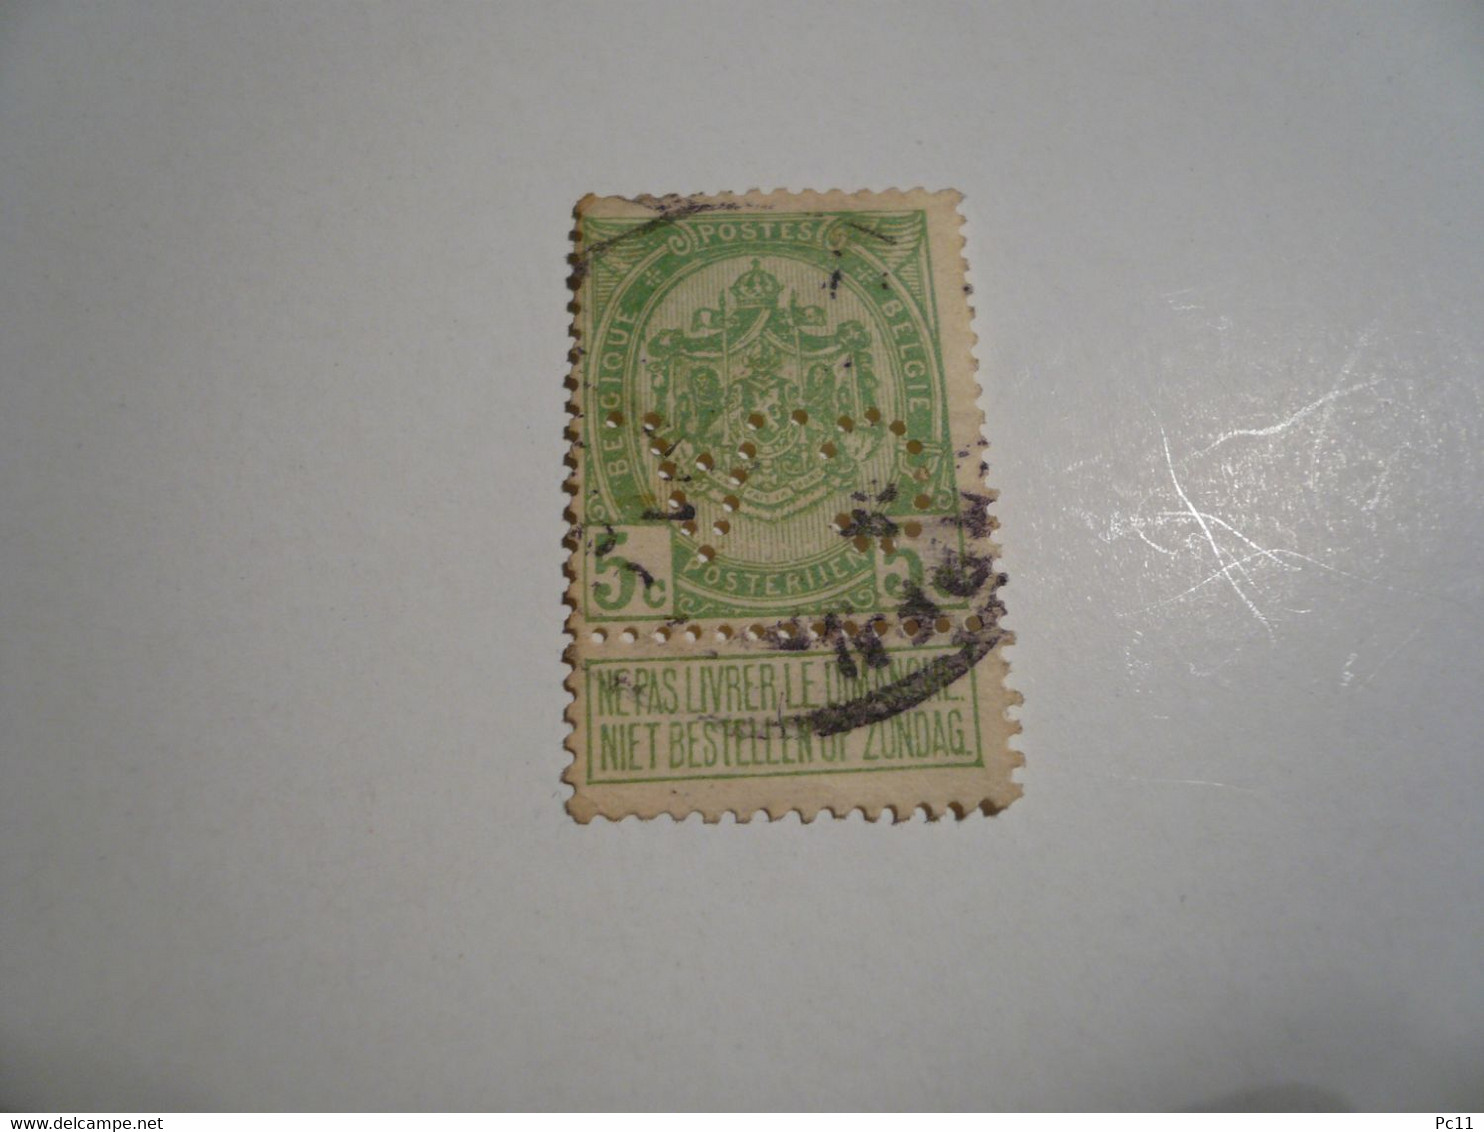 BELGIQUE-timbre Perforé 5C "armoirie" Avec Vignette " NE PAS LIVRER LE DIMANCHE"  Avec Charnière - Bon état - - Unclassified